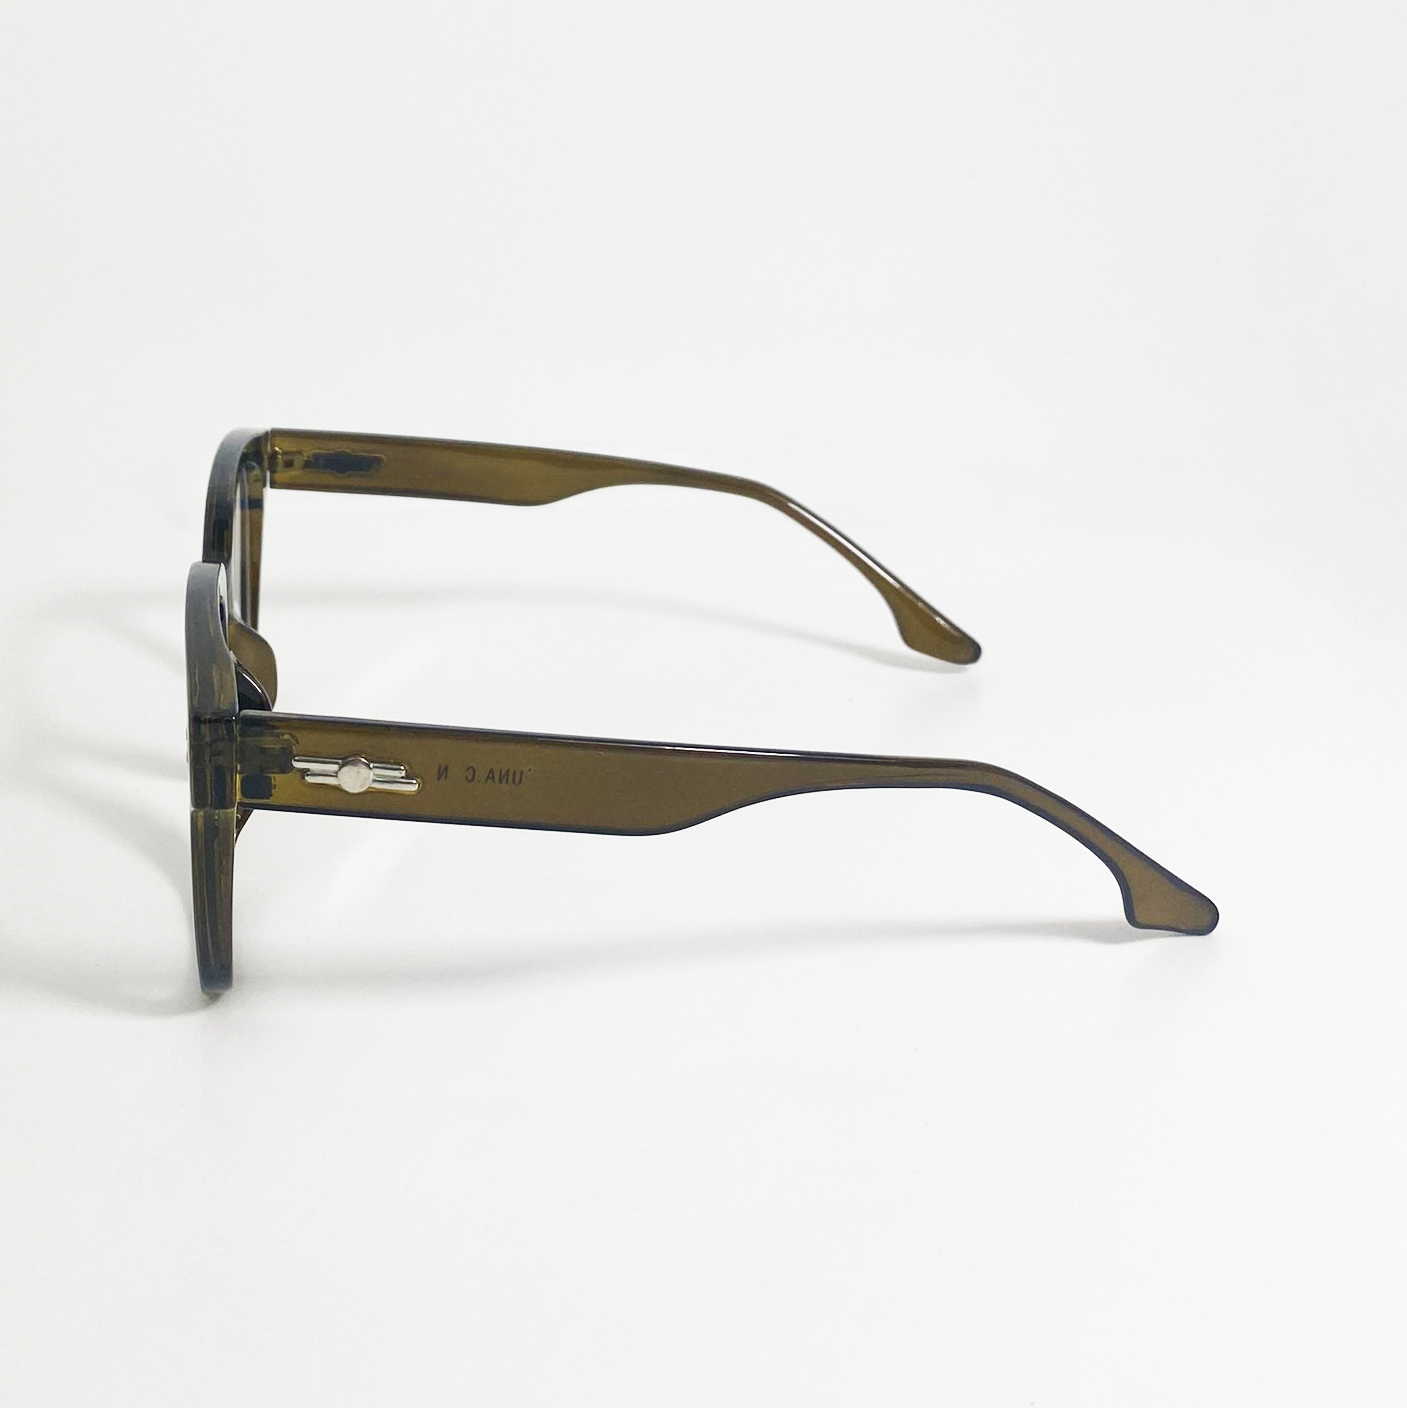 Mắt kính giả cận cao cấp JJUNA315 gọng nhựa dành cho cả nam và nữ - Tròng kính kiểu dáng mới lạ phù hợp với mọi lứa tuổi